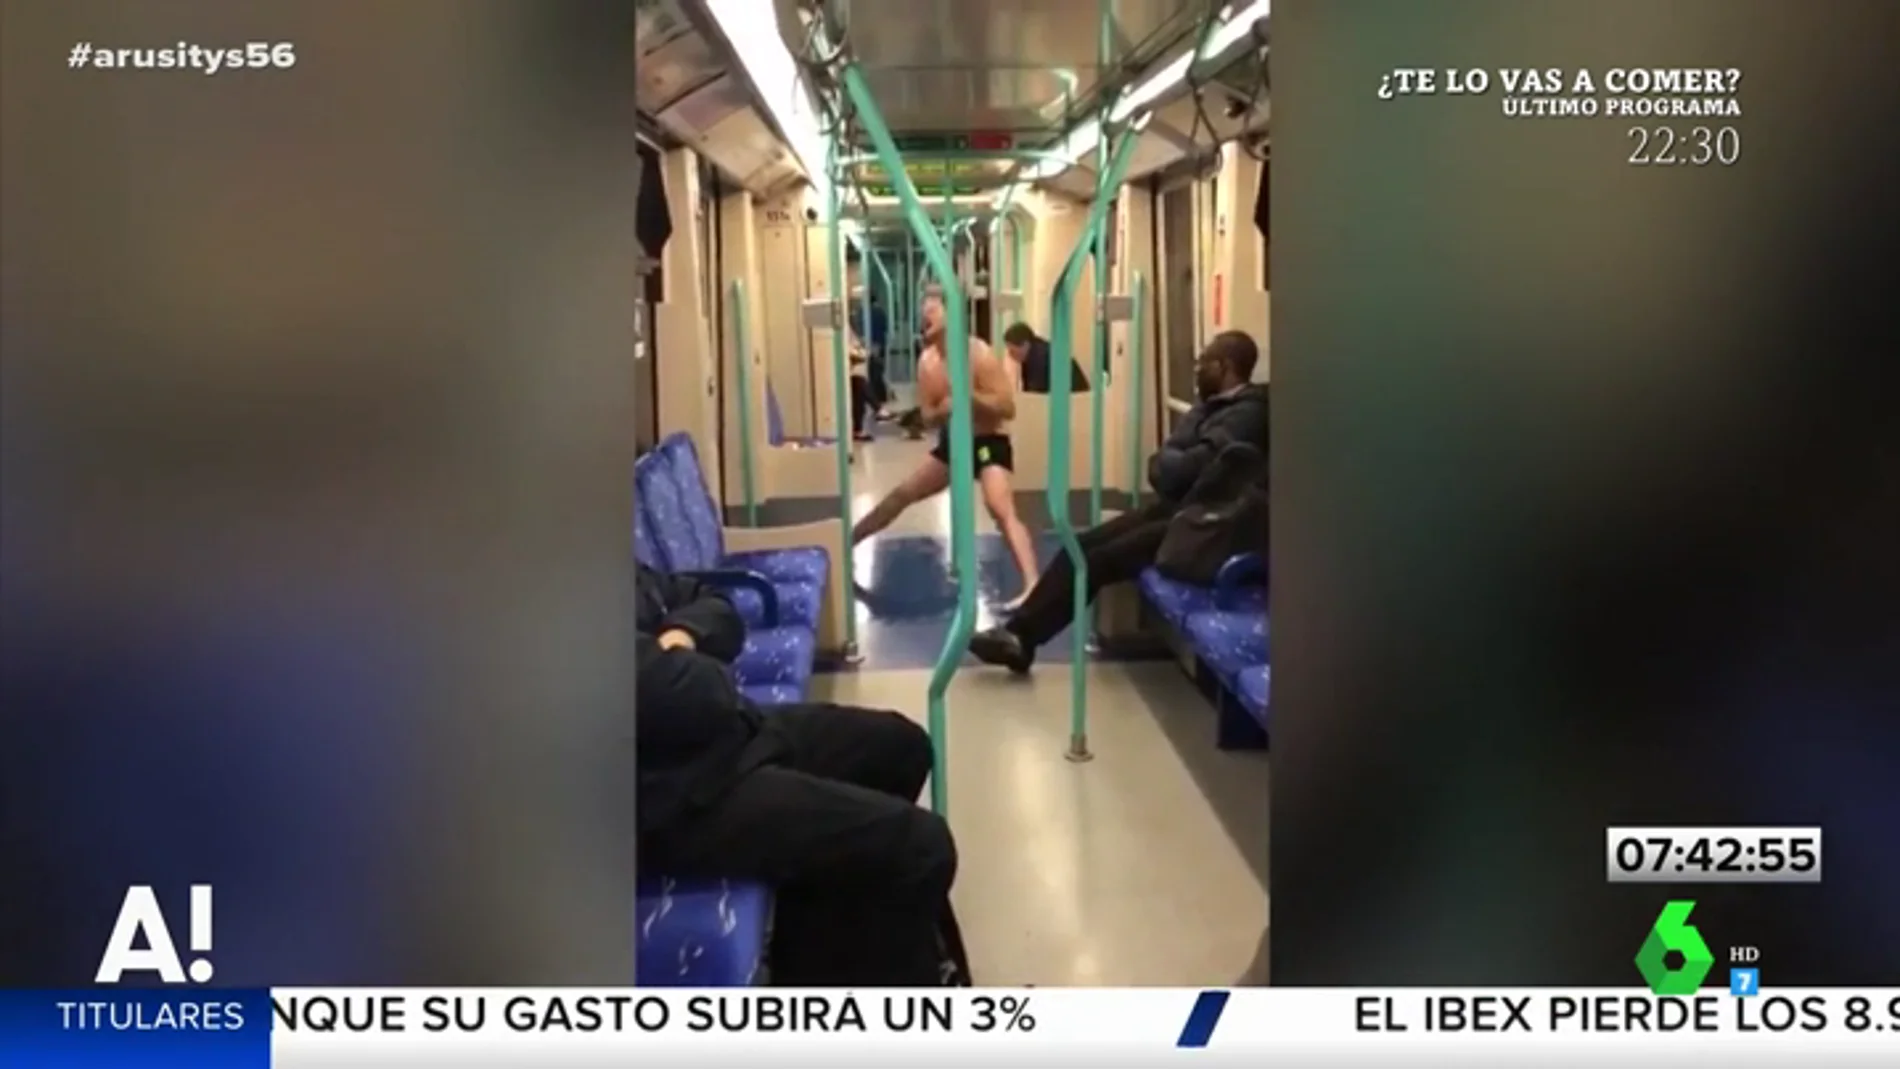 Las surrealistas imágenes de un hombre bailando en las barras del metro 